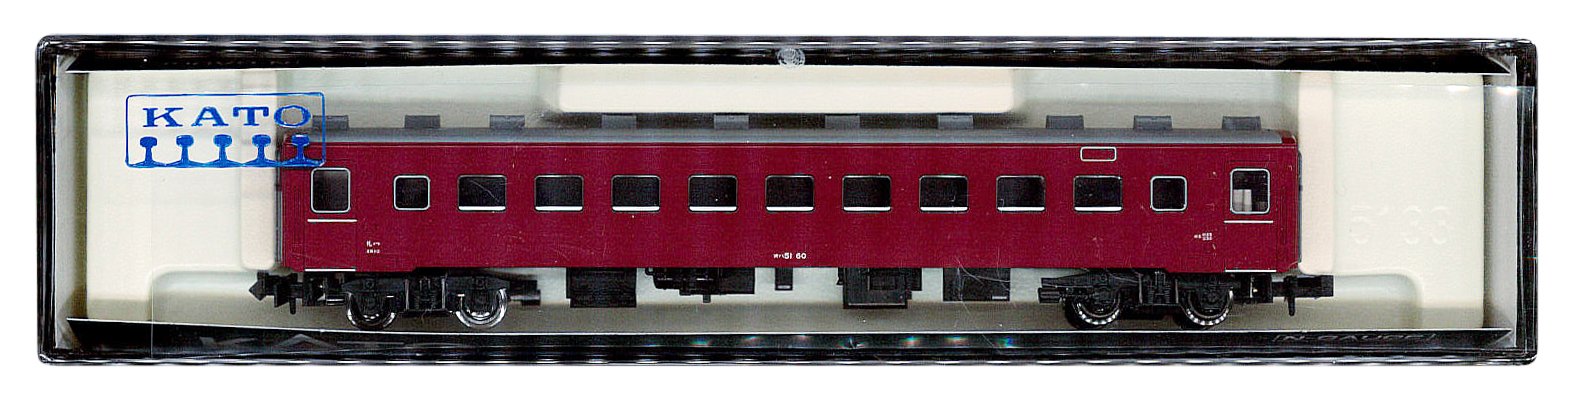 Kato Spur N 5245 Modelleisenbahn-Personenwagen – Serie Oha51